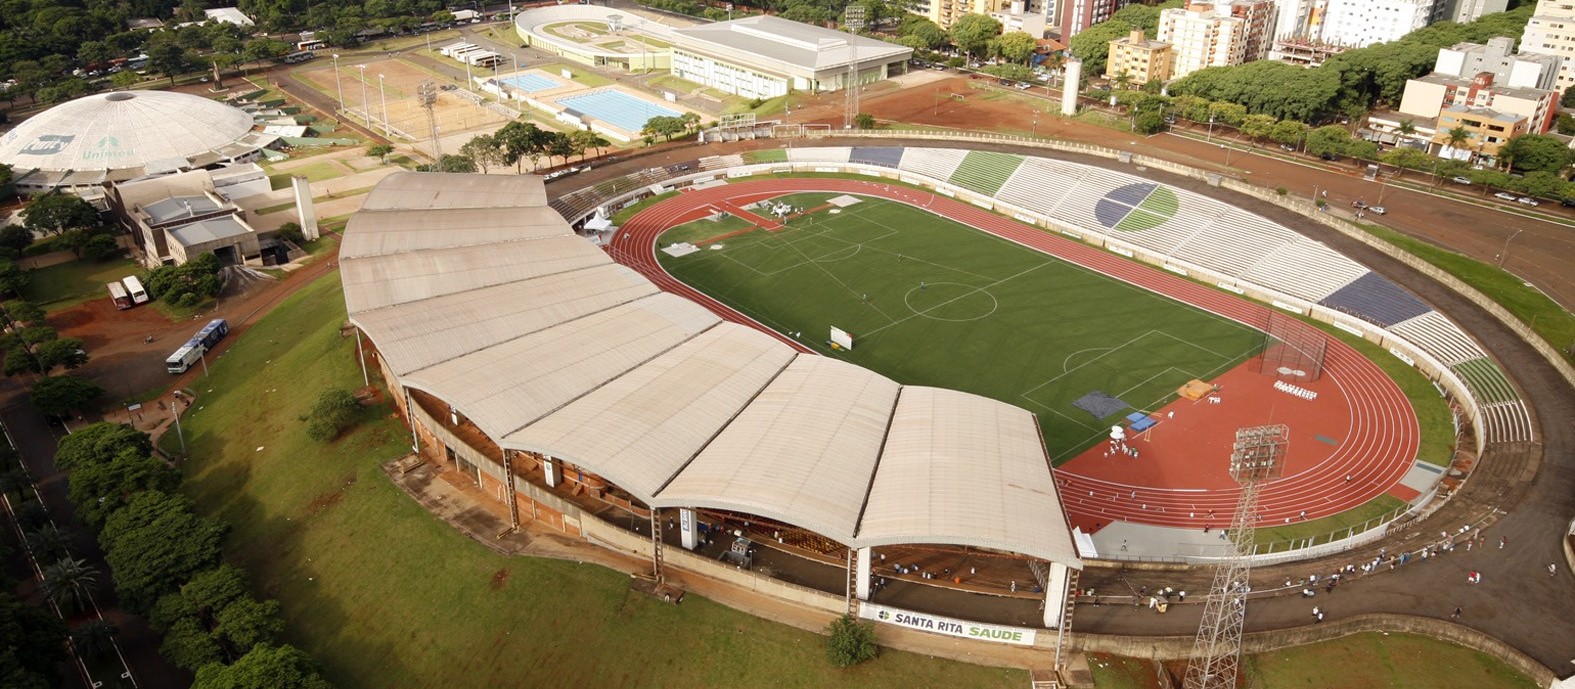 Prefeitura de Maringá aumenta em sete vezes o preço para estádio Willie Davids ser utilizado em eventos religiosos